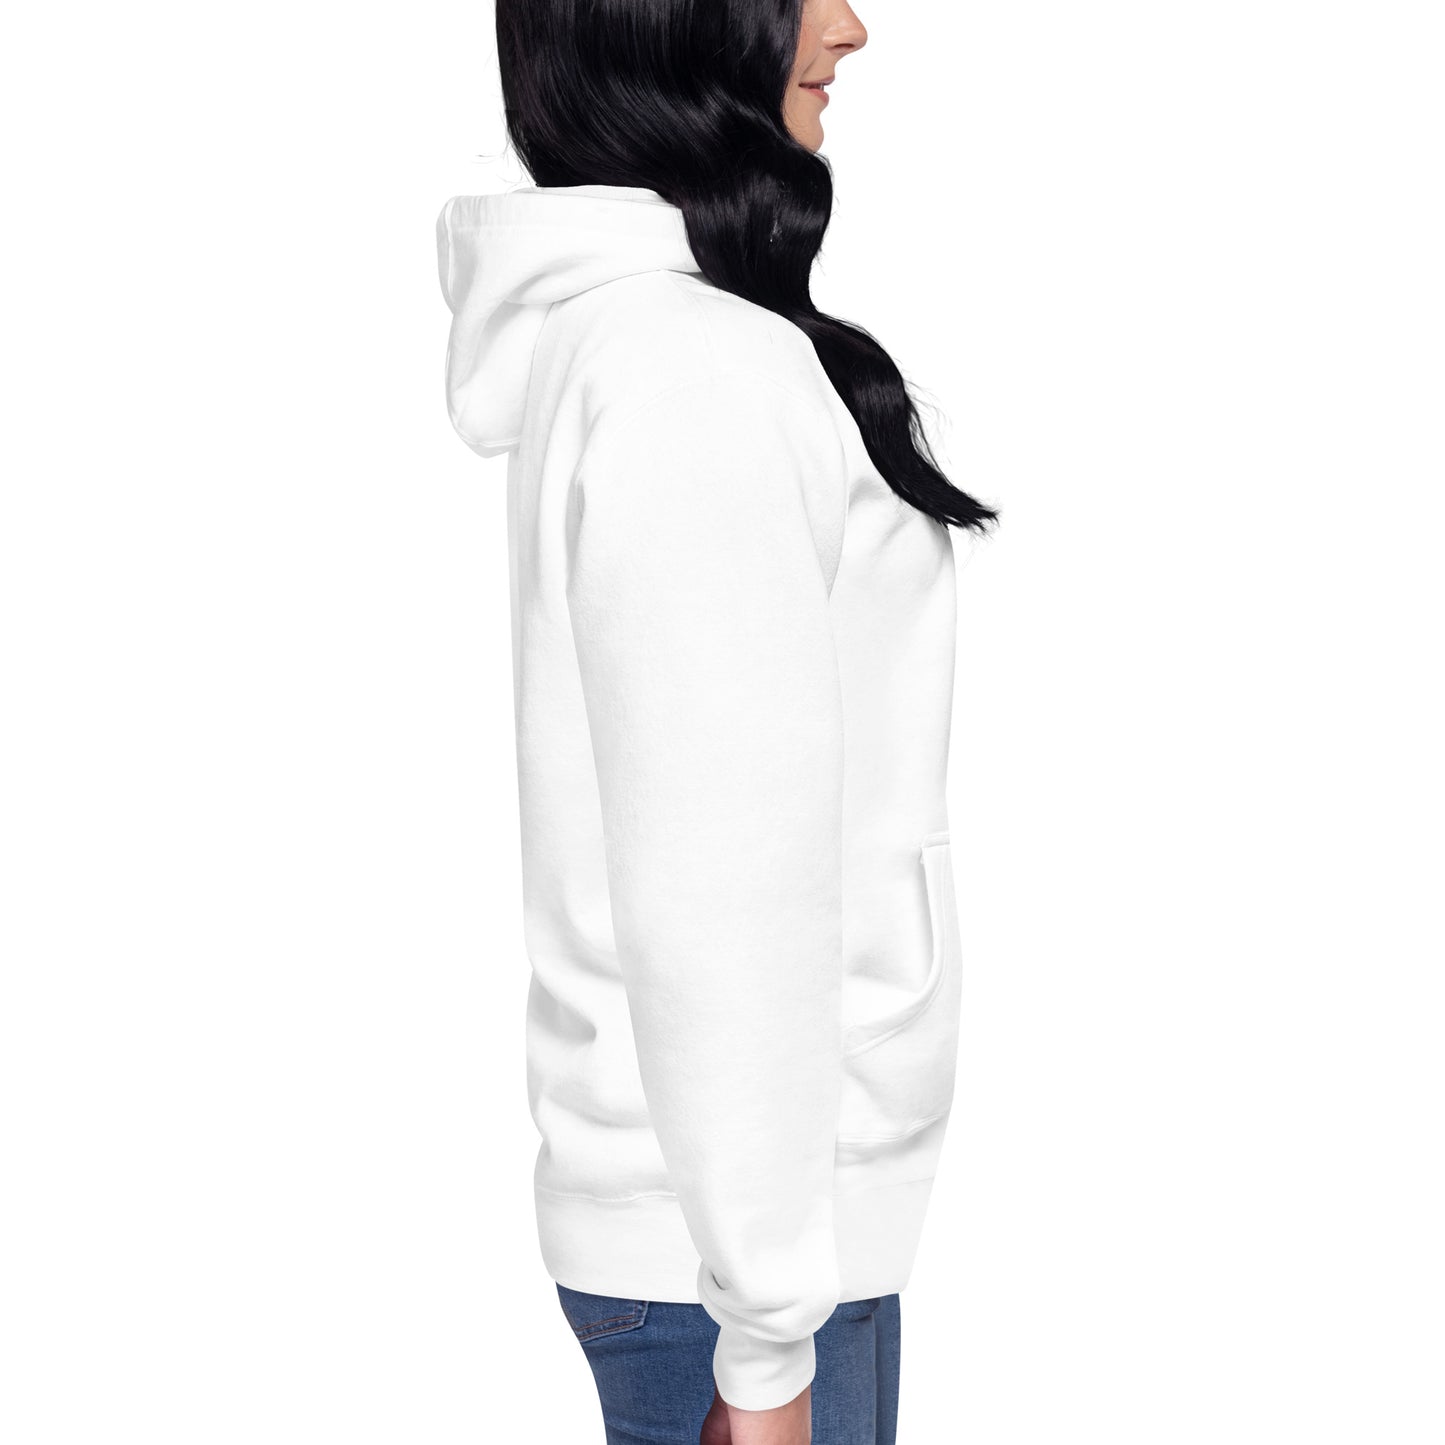 Reverse sponsored unisex hoodie